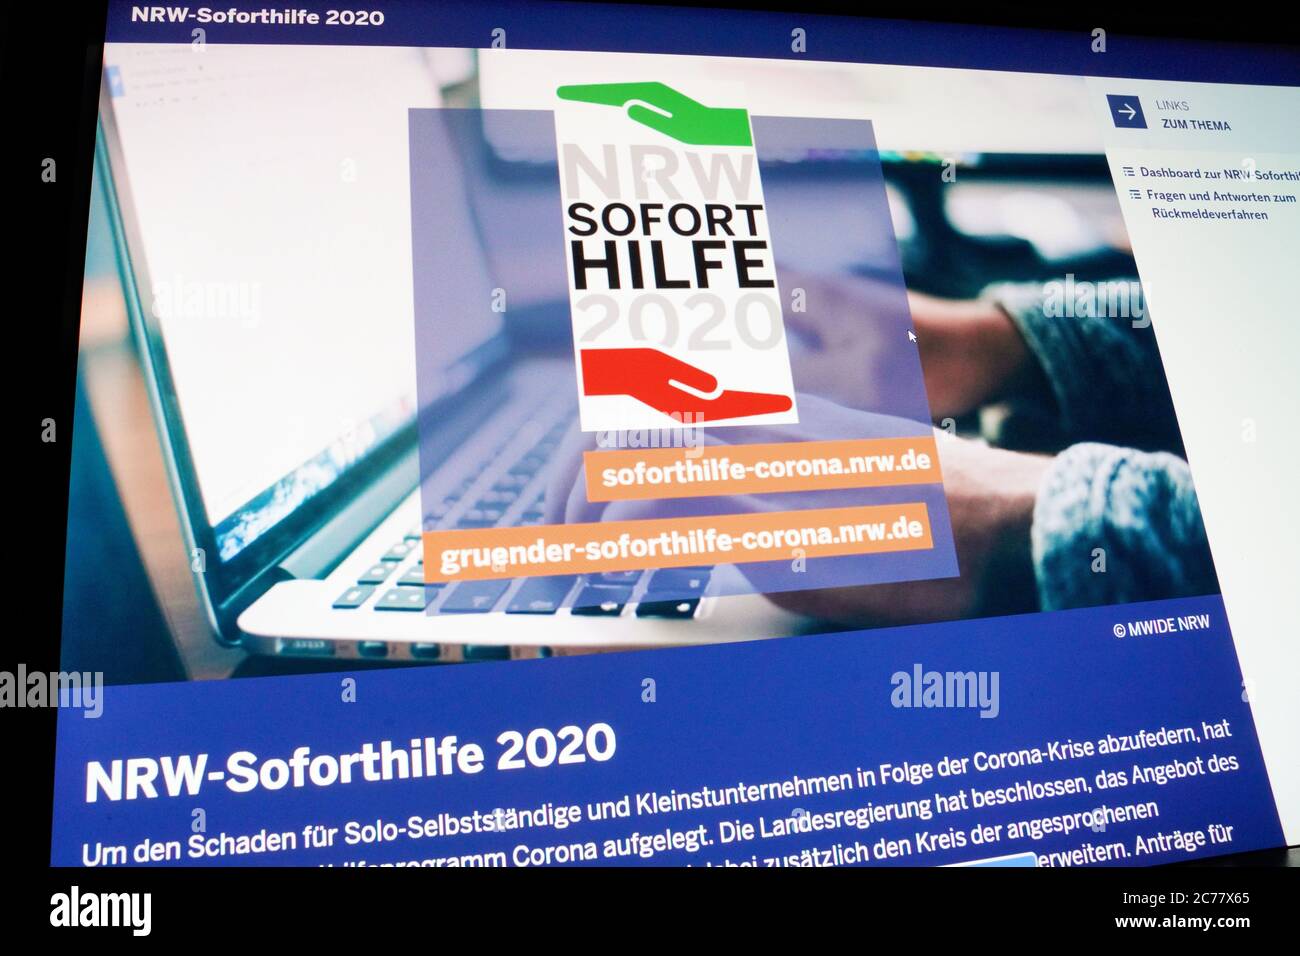 Computerbildschirm am 15.7.2020 mit der Website des NRW-Wirtschaftsministeriums zum Corona-Sofortilfeprogramm für solo-Selbständige und Kleinstunternehmen. Foto de stock